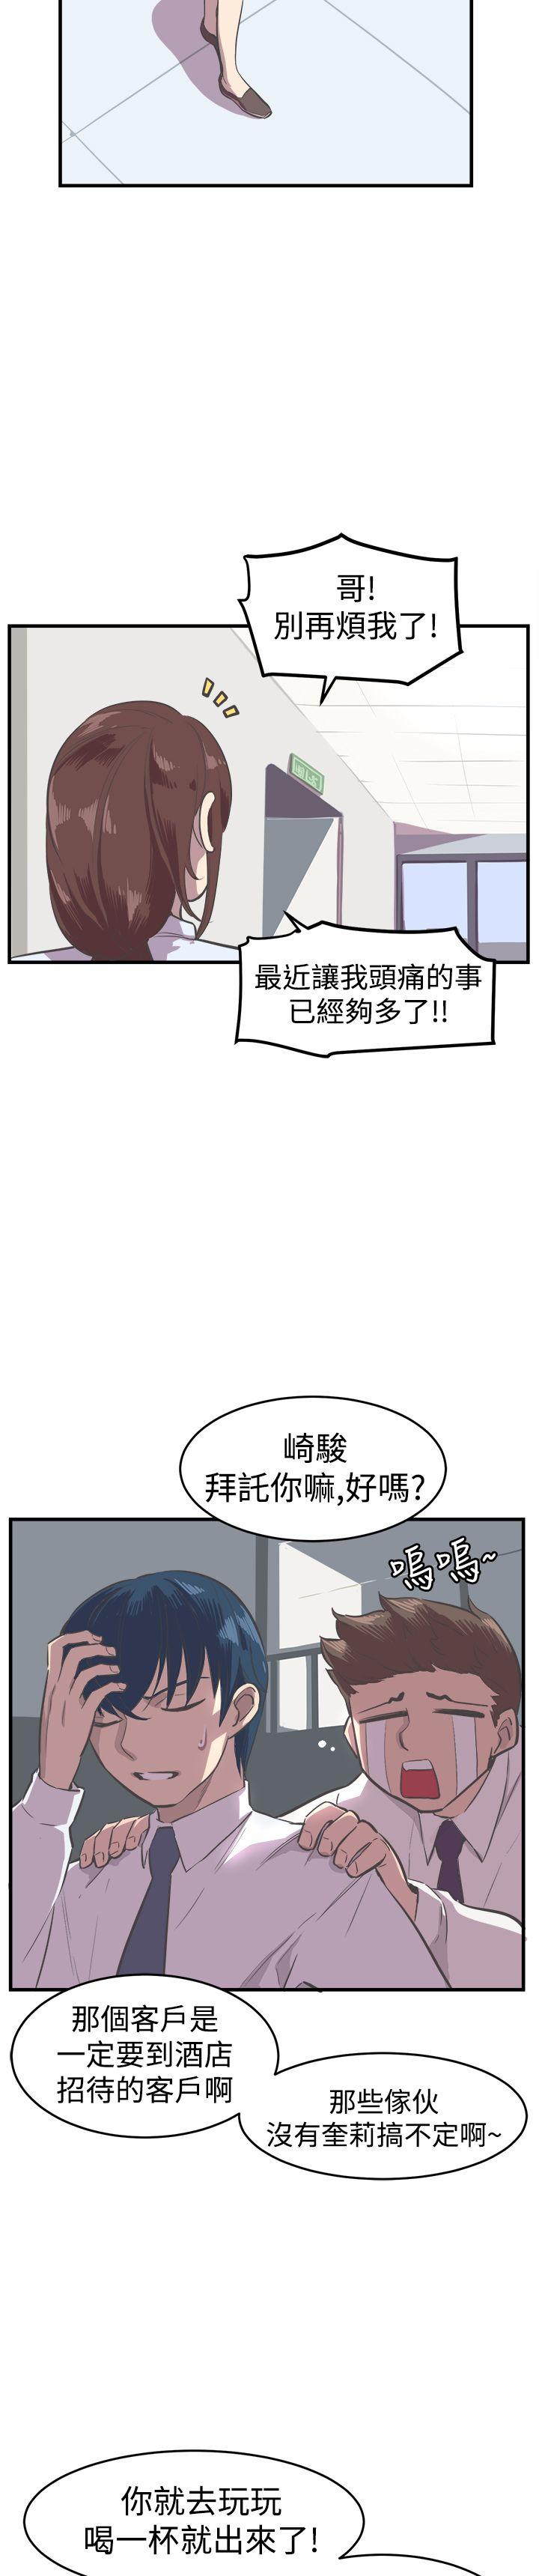 青春男女(完结)  第15话 漫画图片8.jpg